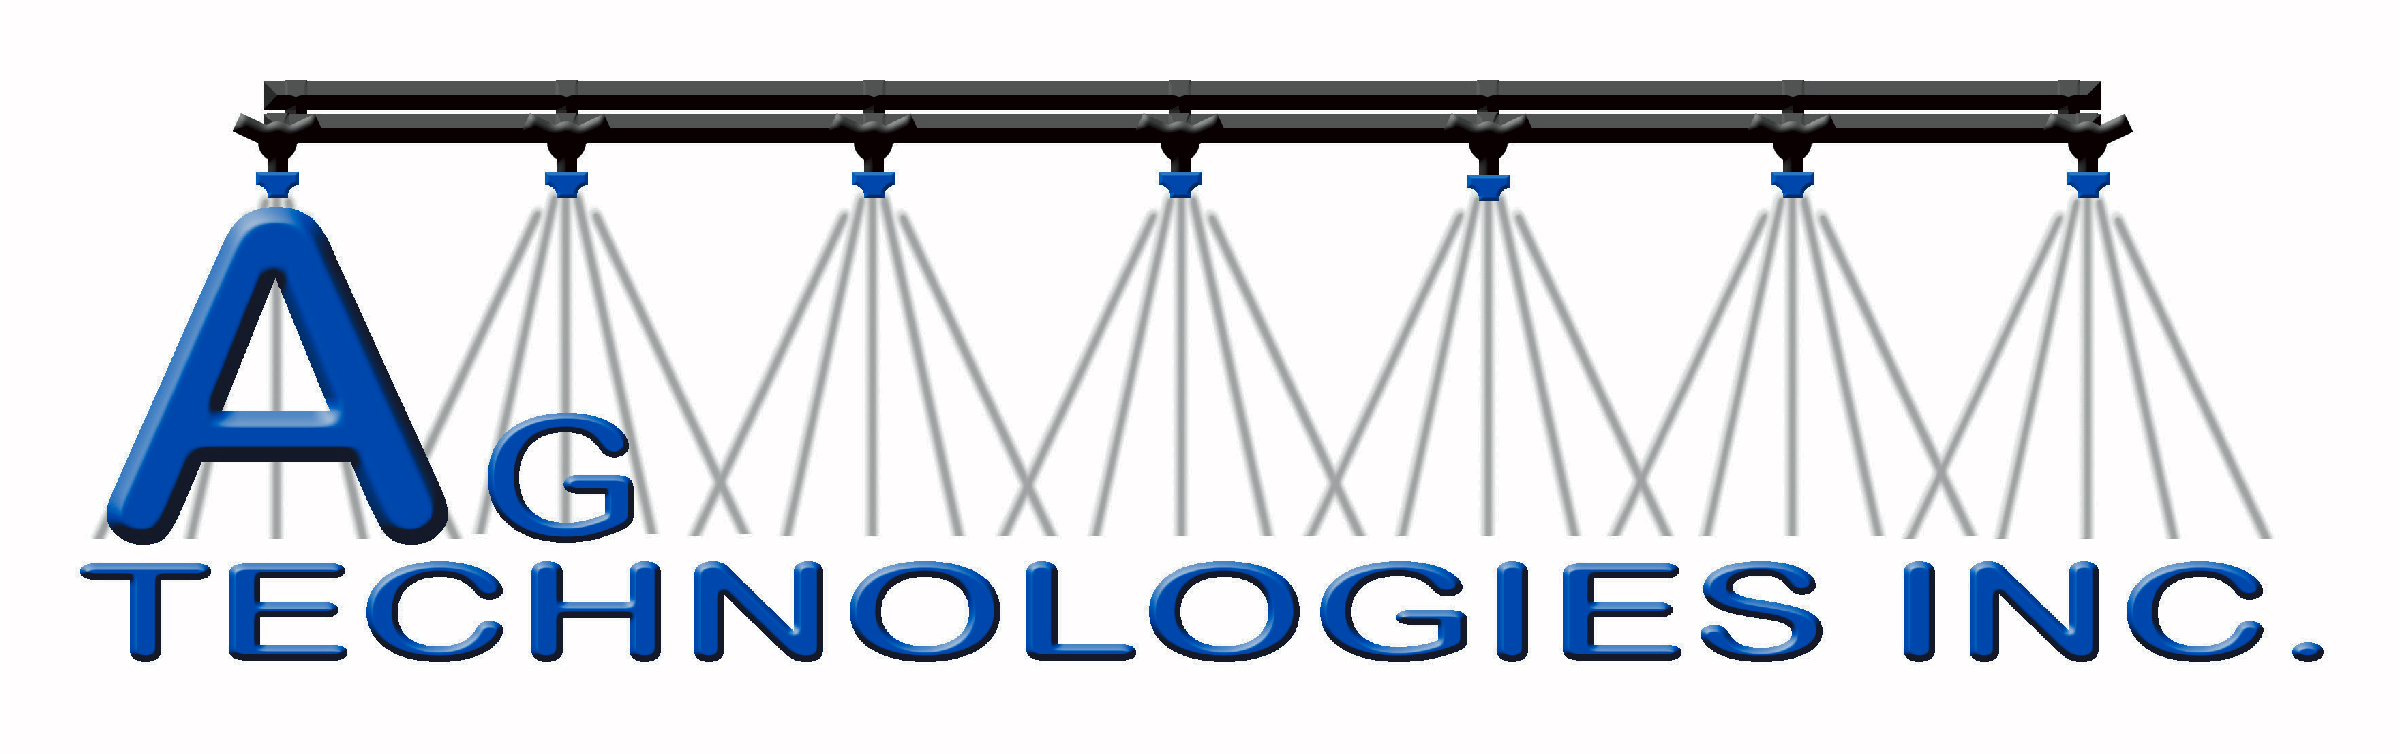 Ag Technologies Logo